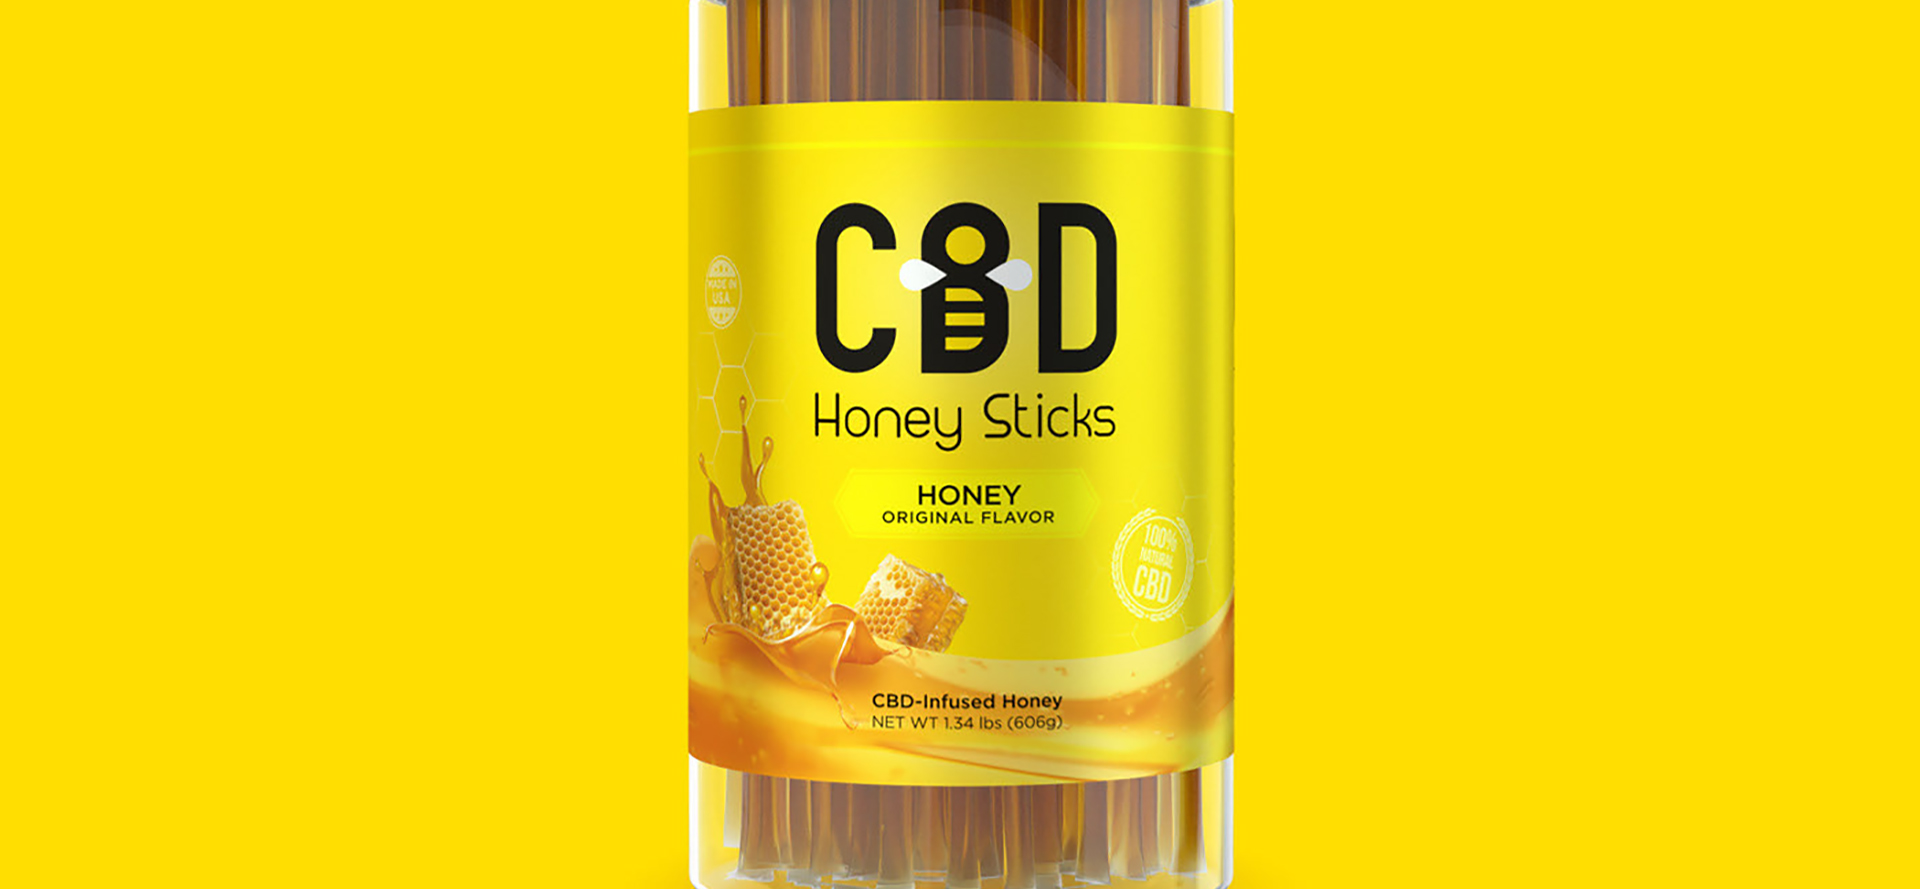 CBD Honey Sticks Original Flavor.